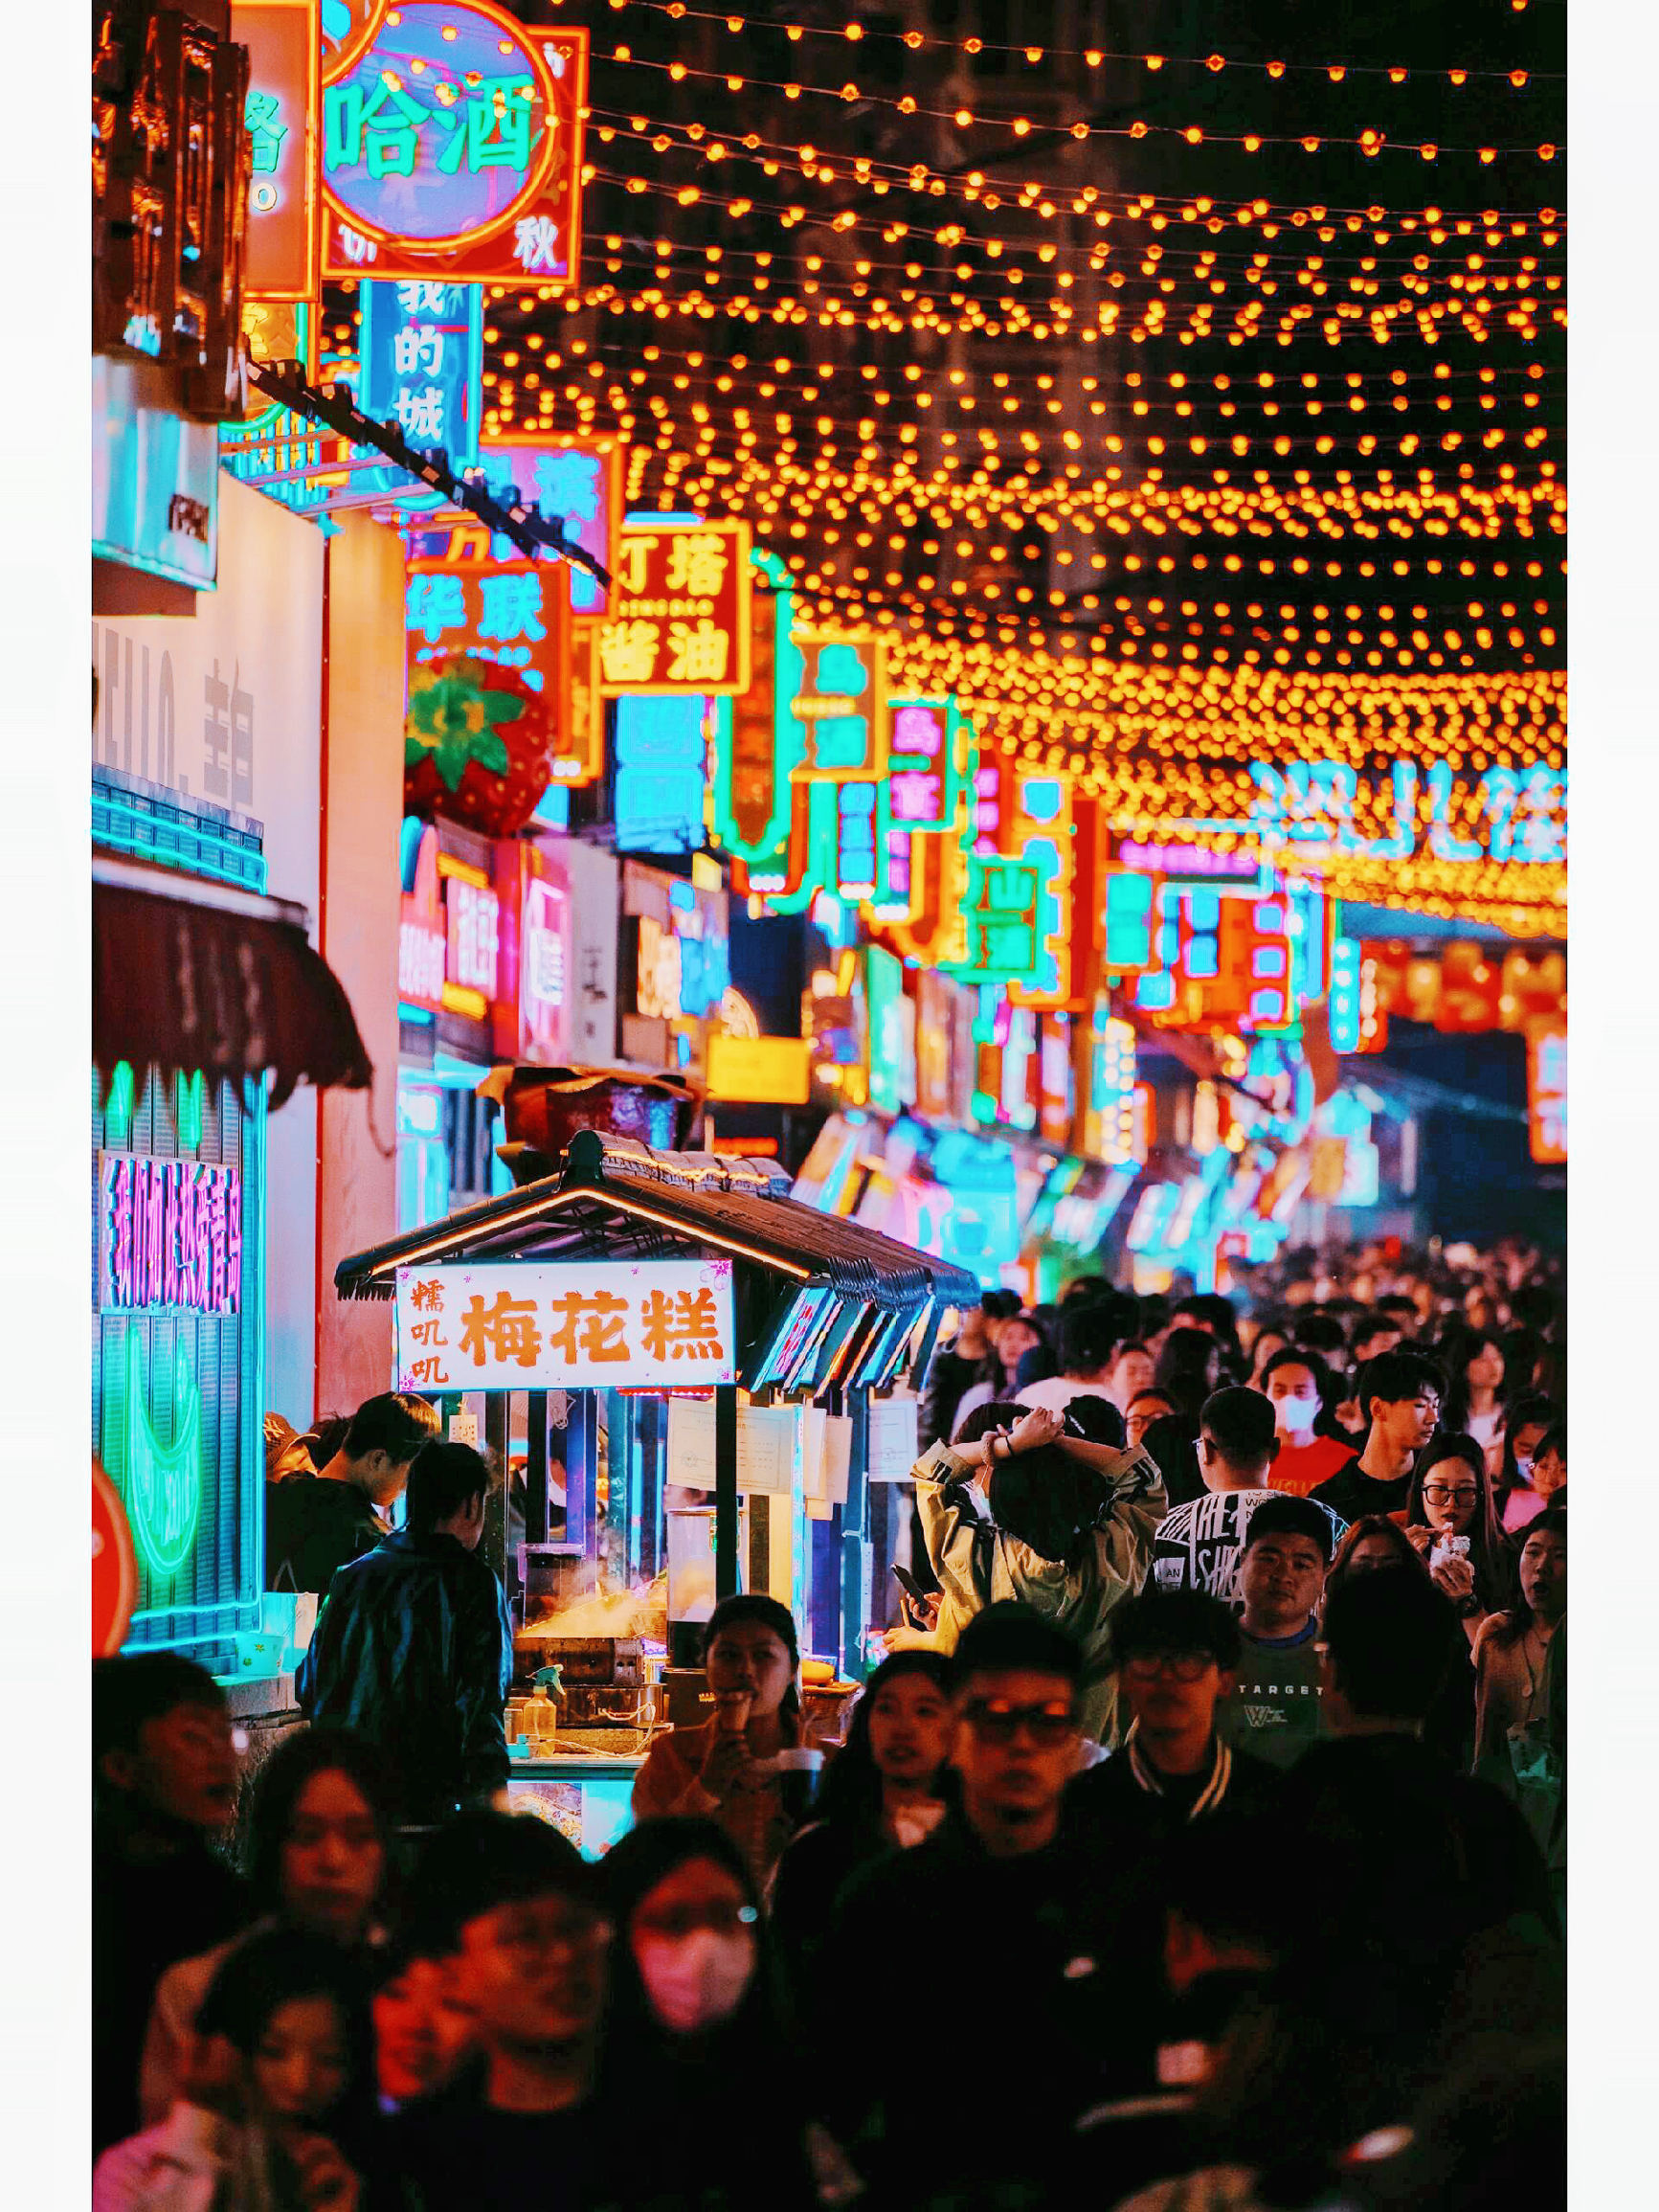 台东夜市是台湾著名的夜市之一，位于台东市区中心，是当地居民和游客都非常喜欢的地方。夜市内有许多美食摊